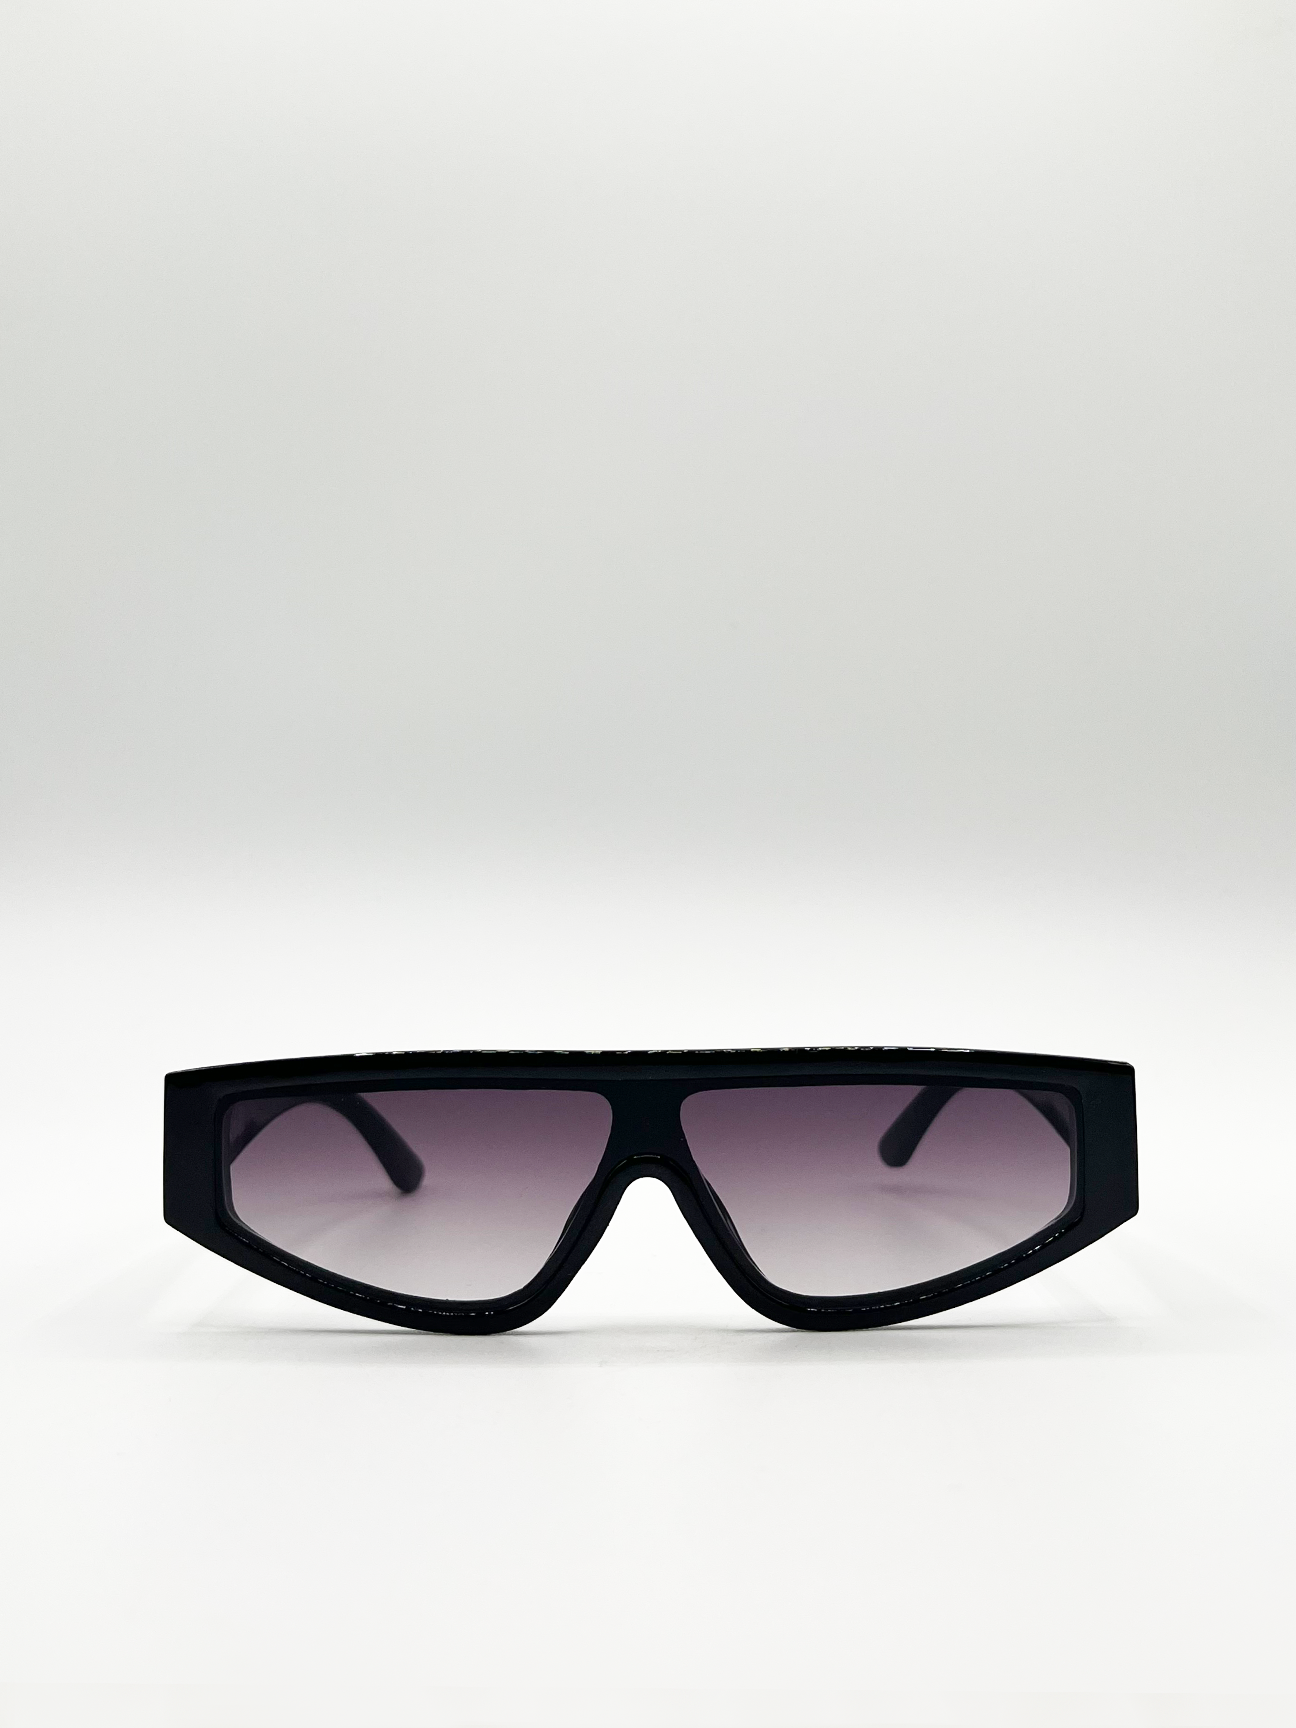 Black Oversized Racer Style Sunglasses with Black Lenses